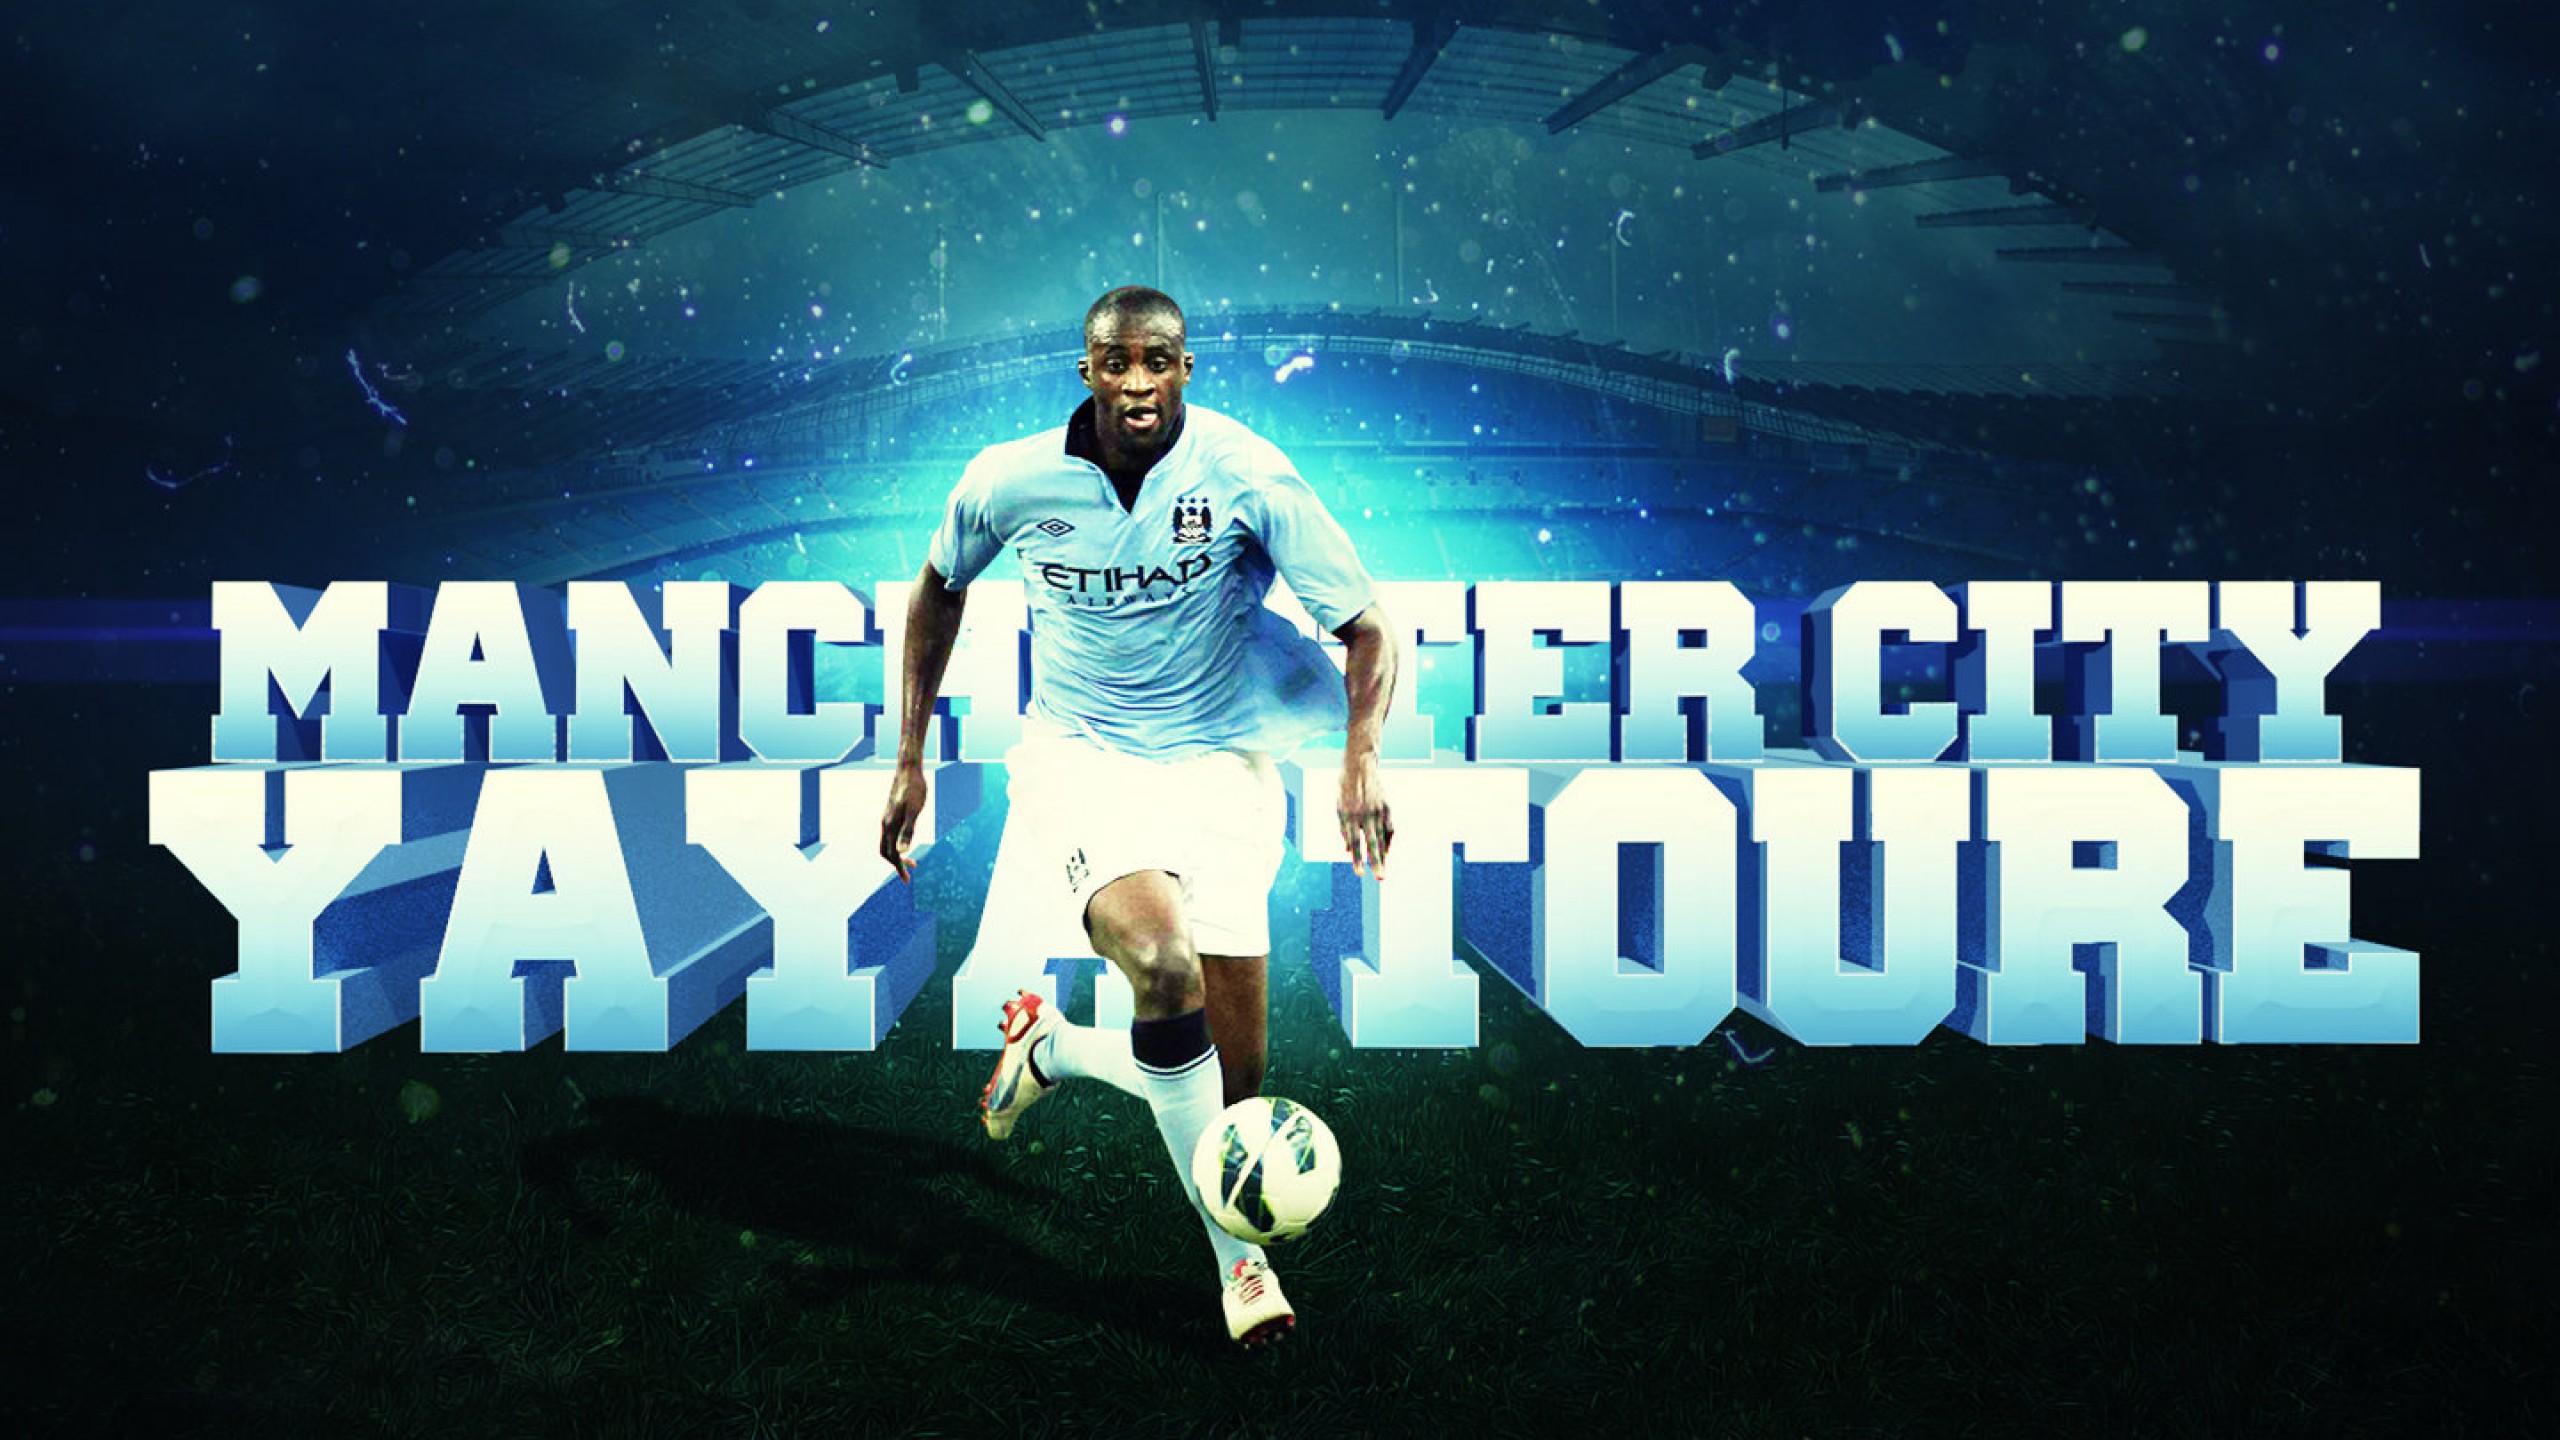 Manchester City best football club england Desktop wallpapers 1600x900